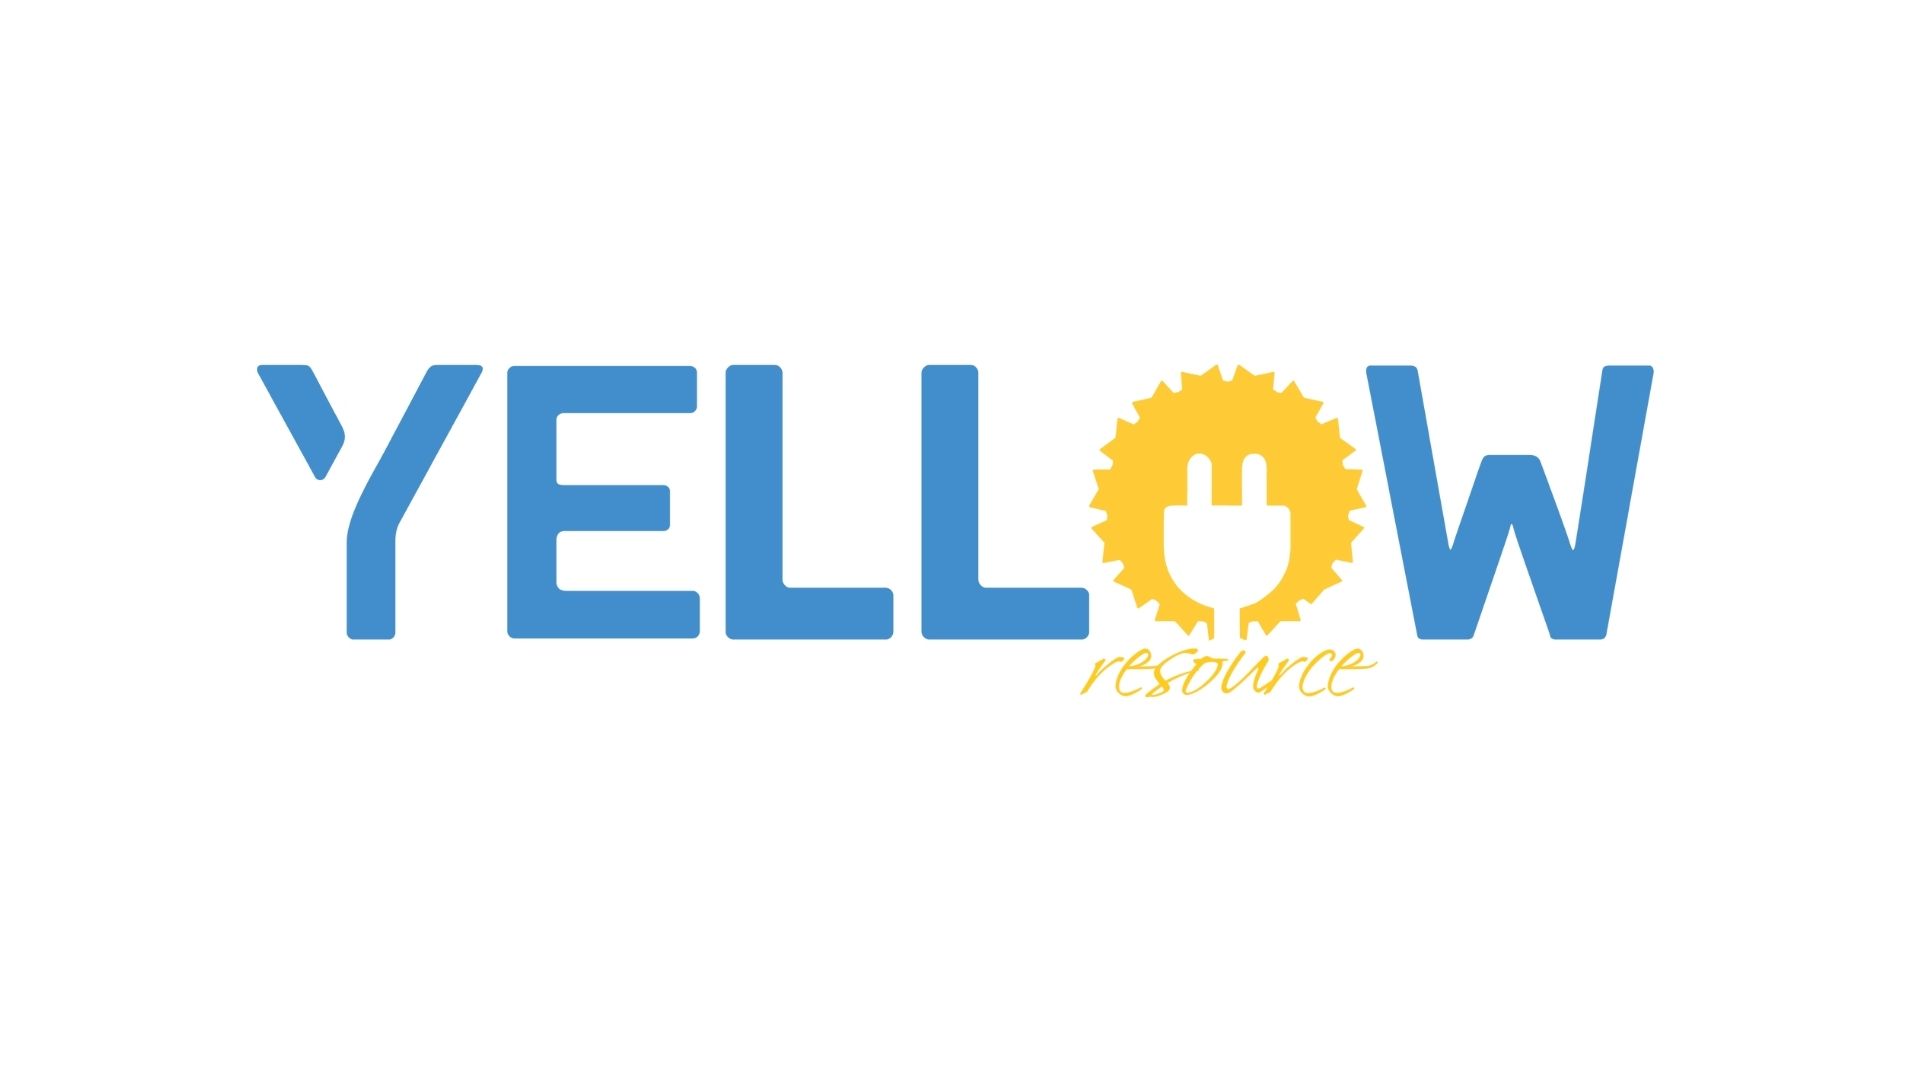 Yellow Resource